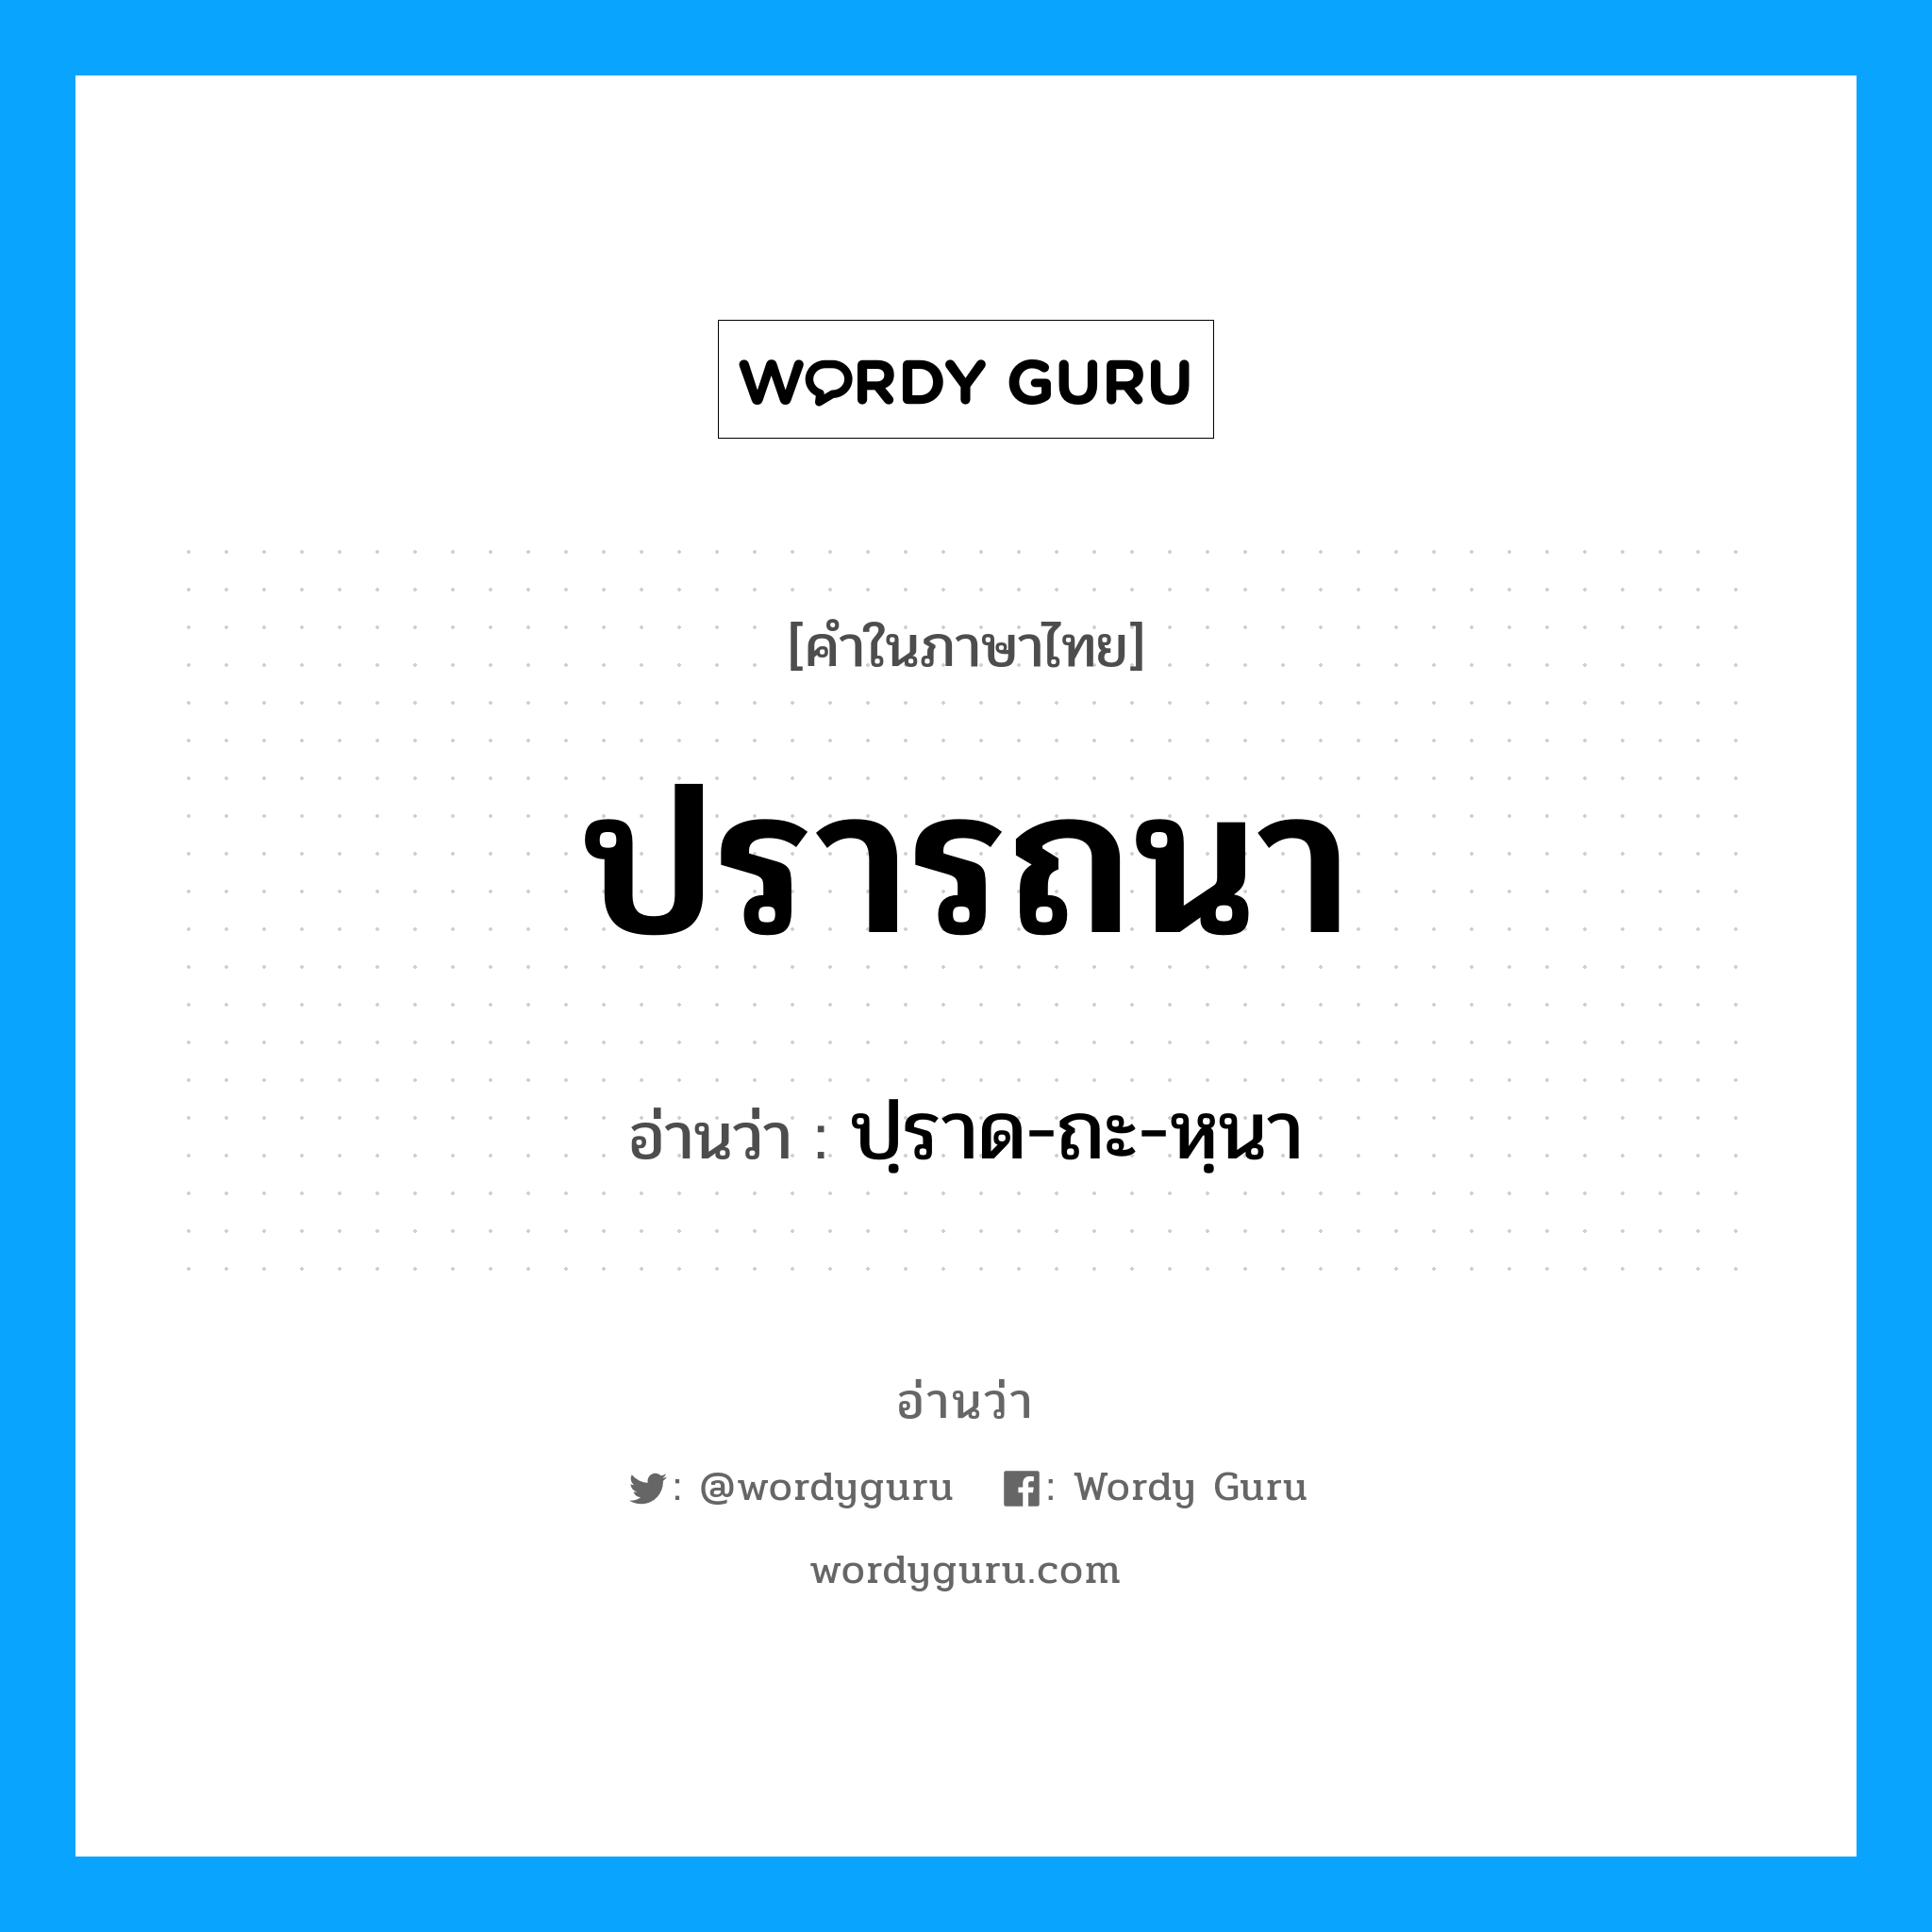 ปฺราด-ถะ-หฺนา เป็นคำอ่านของคำไหน?, คำในภาษาไทย ปฺราด-ถะ-หฺนา อ่านว่า ปรารถนา